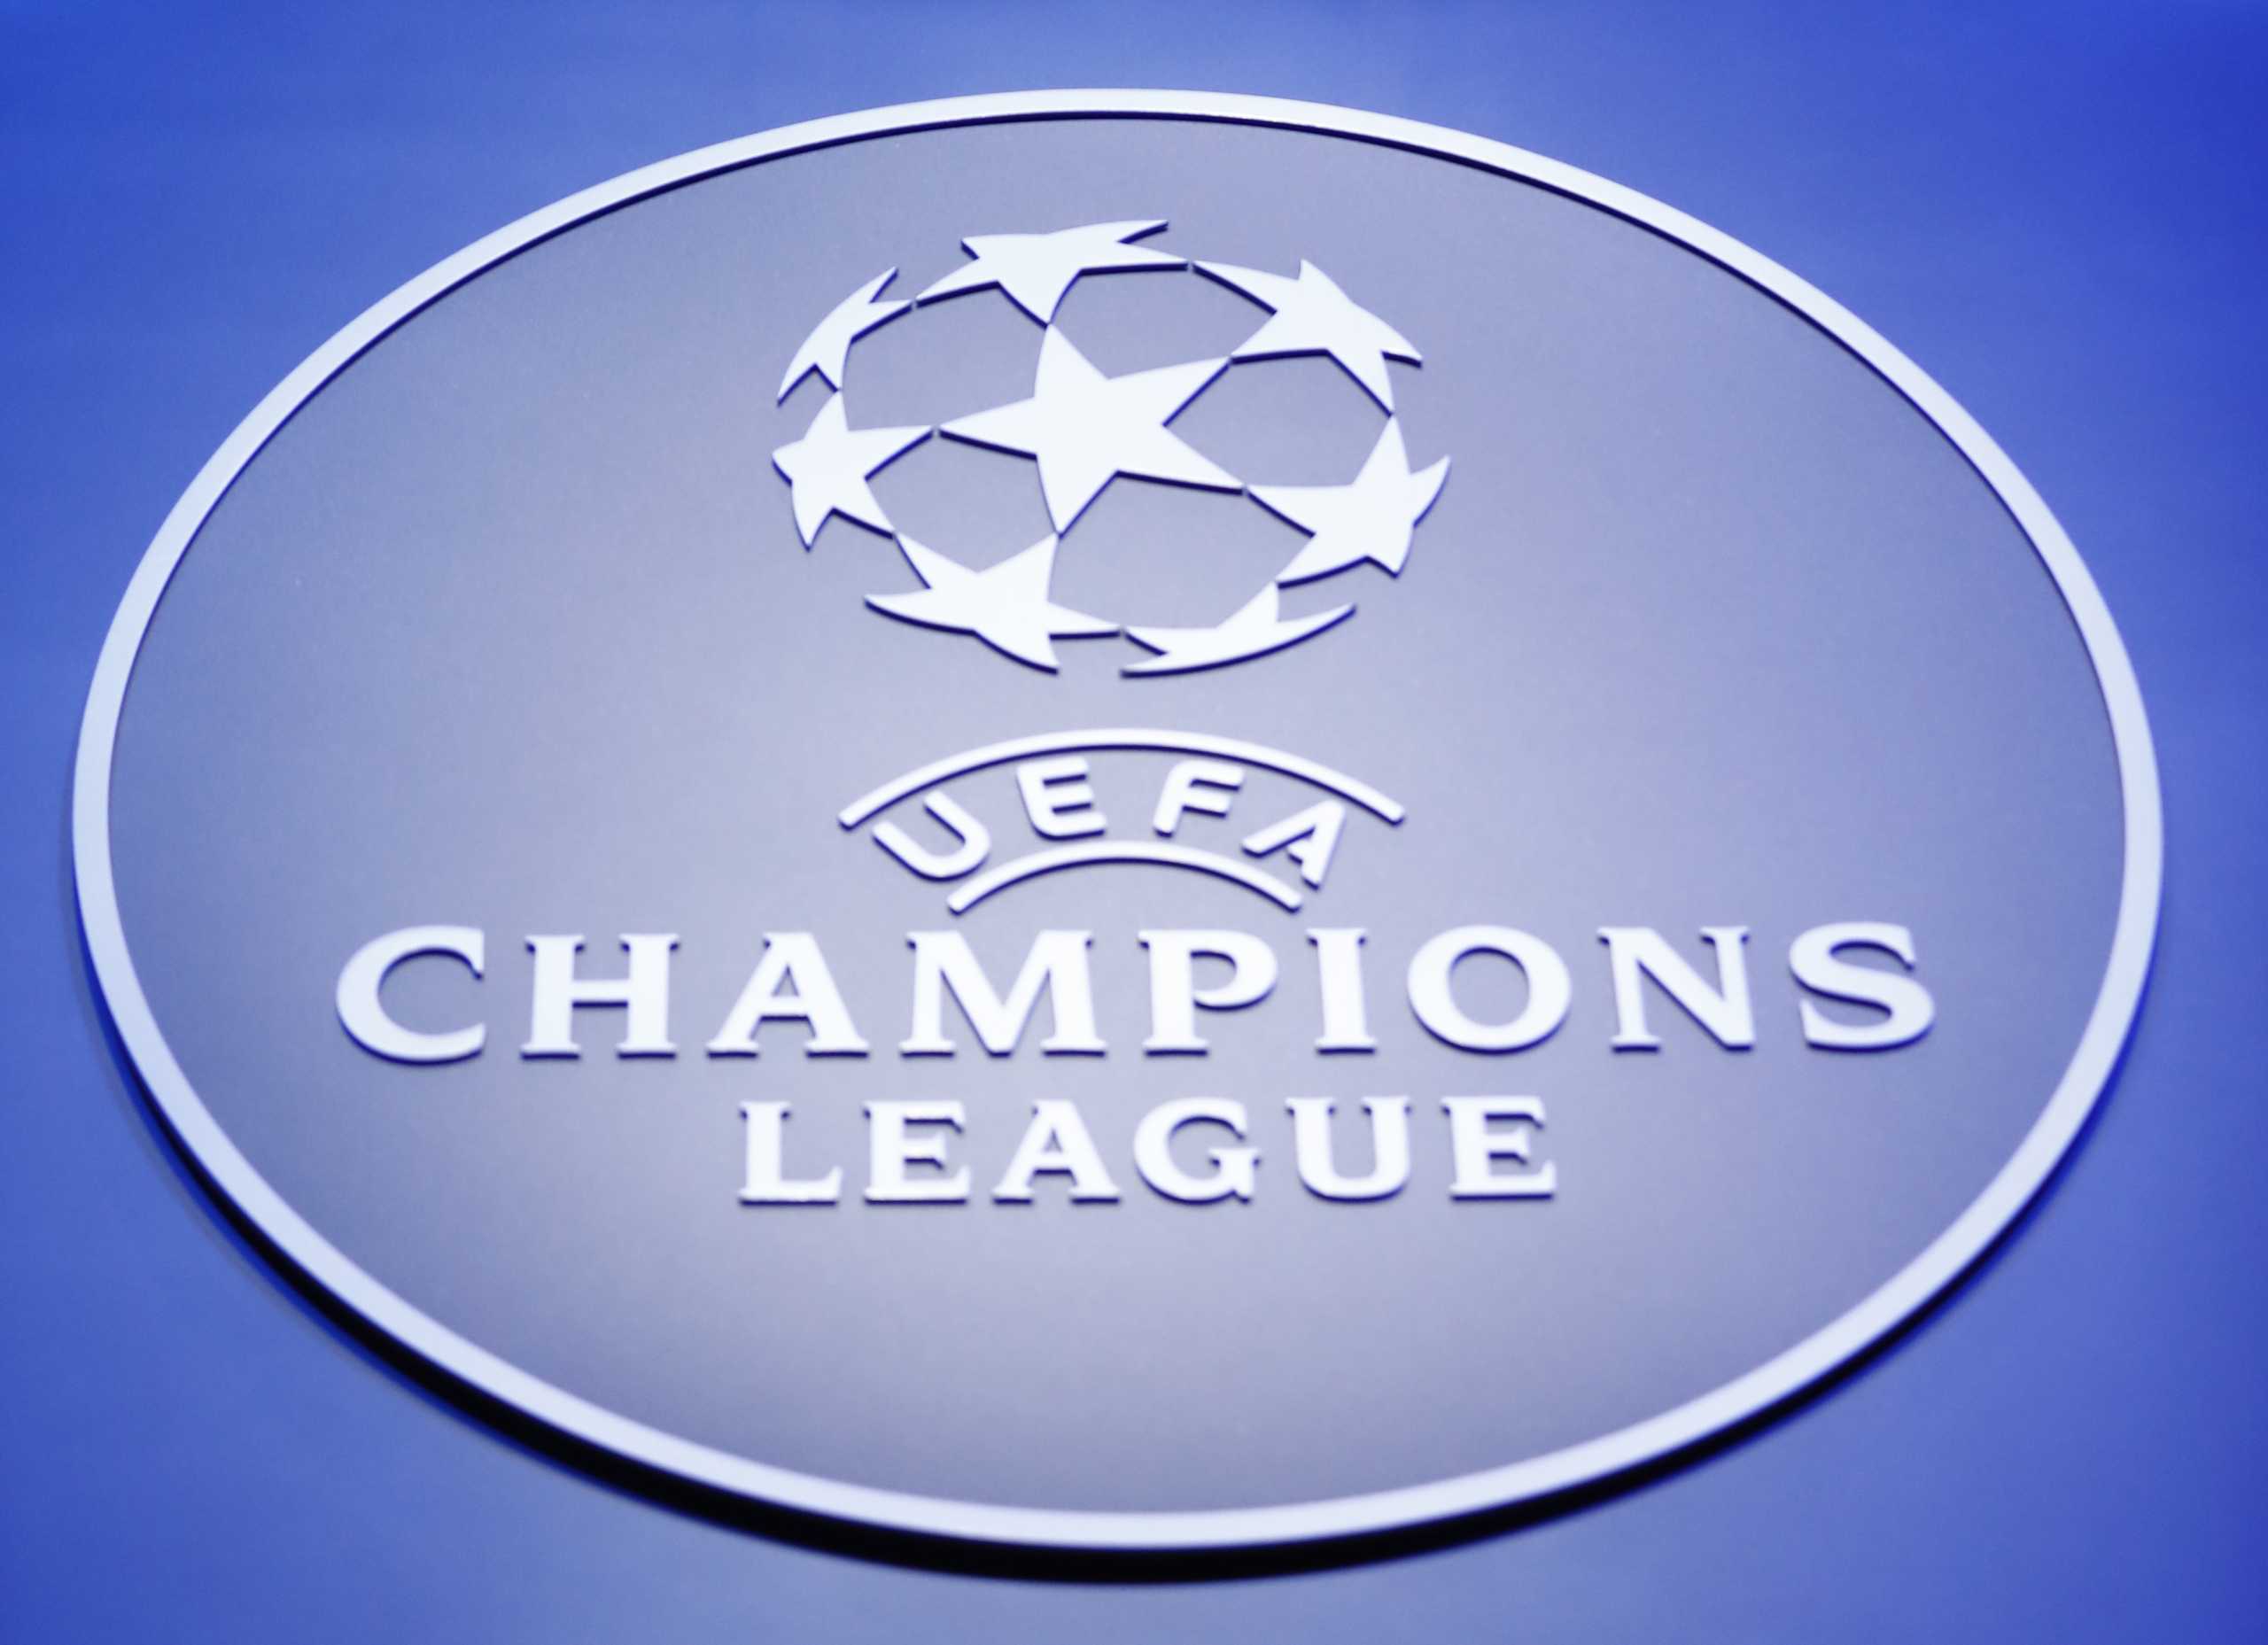 Αθλητικές μεταδόσεις με Champions League (15/09)